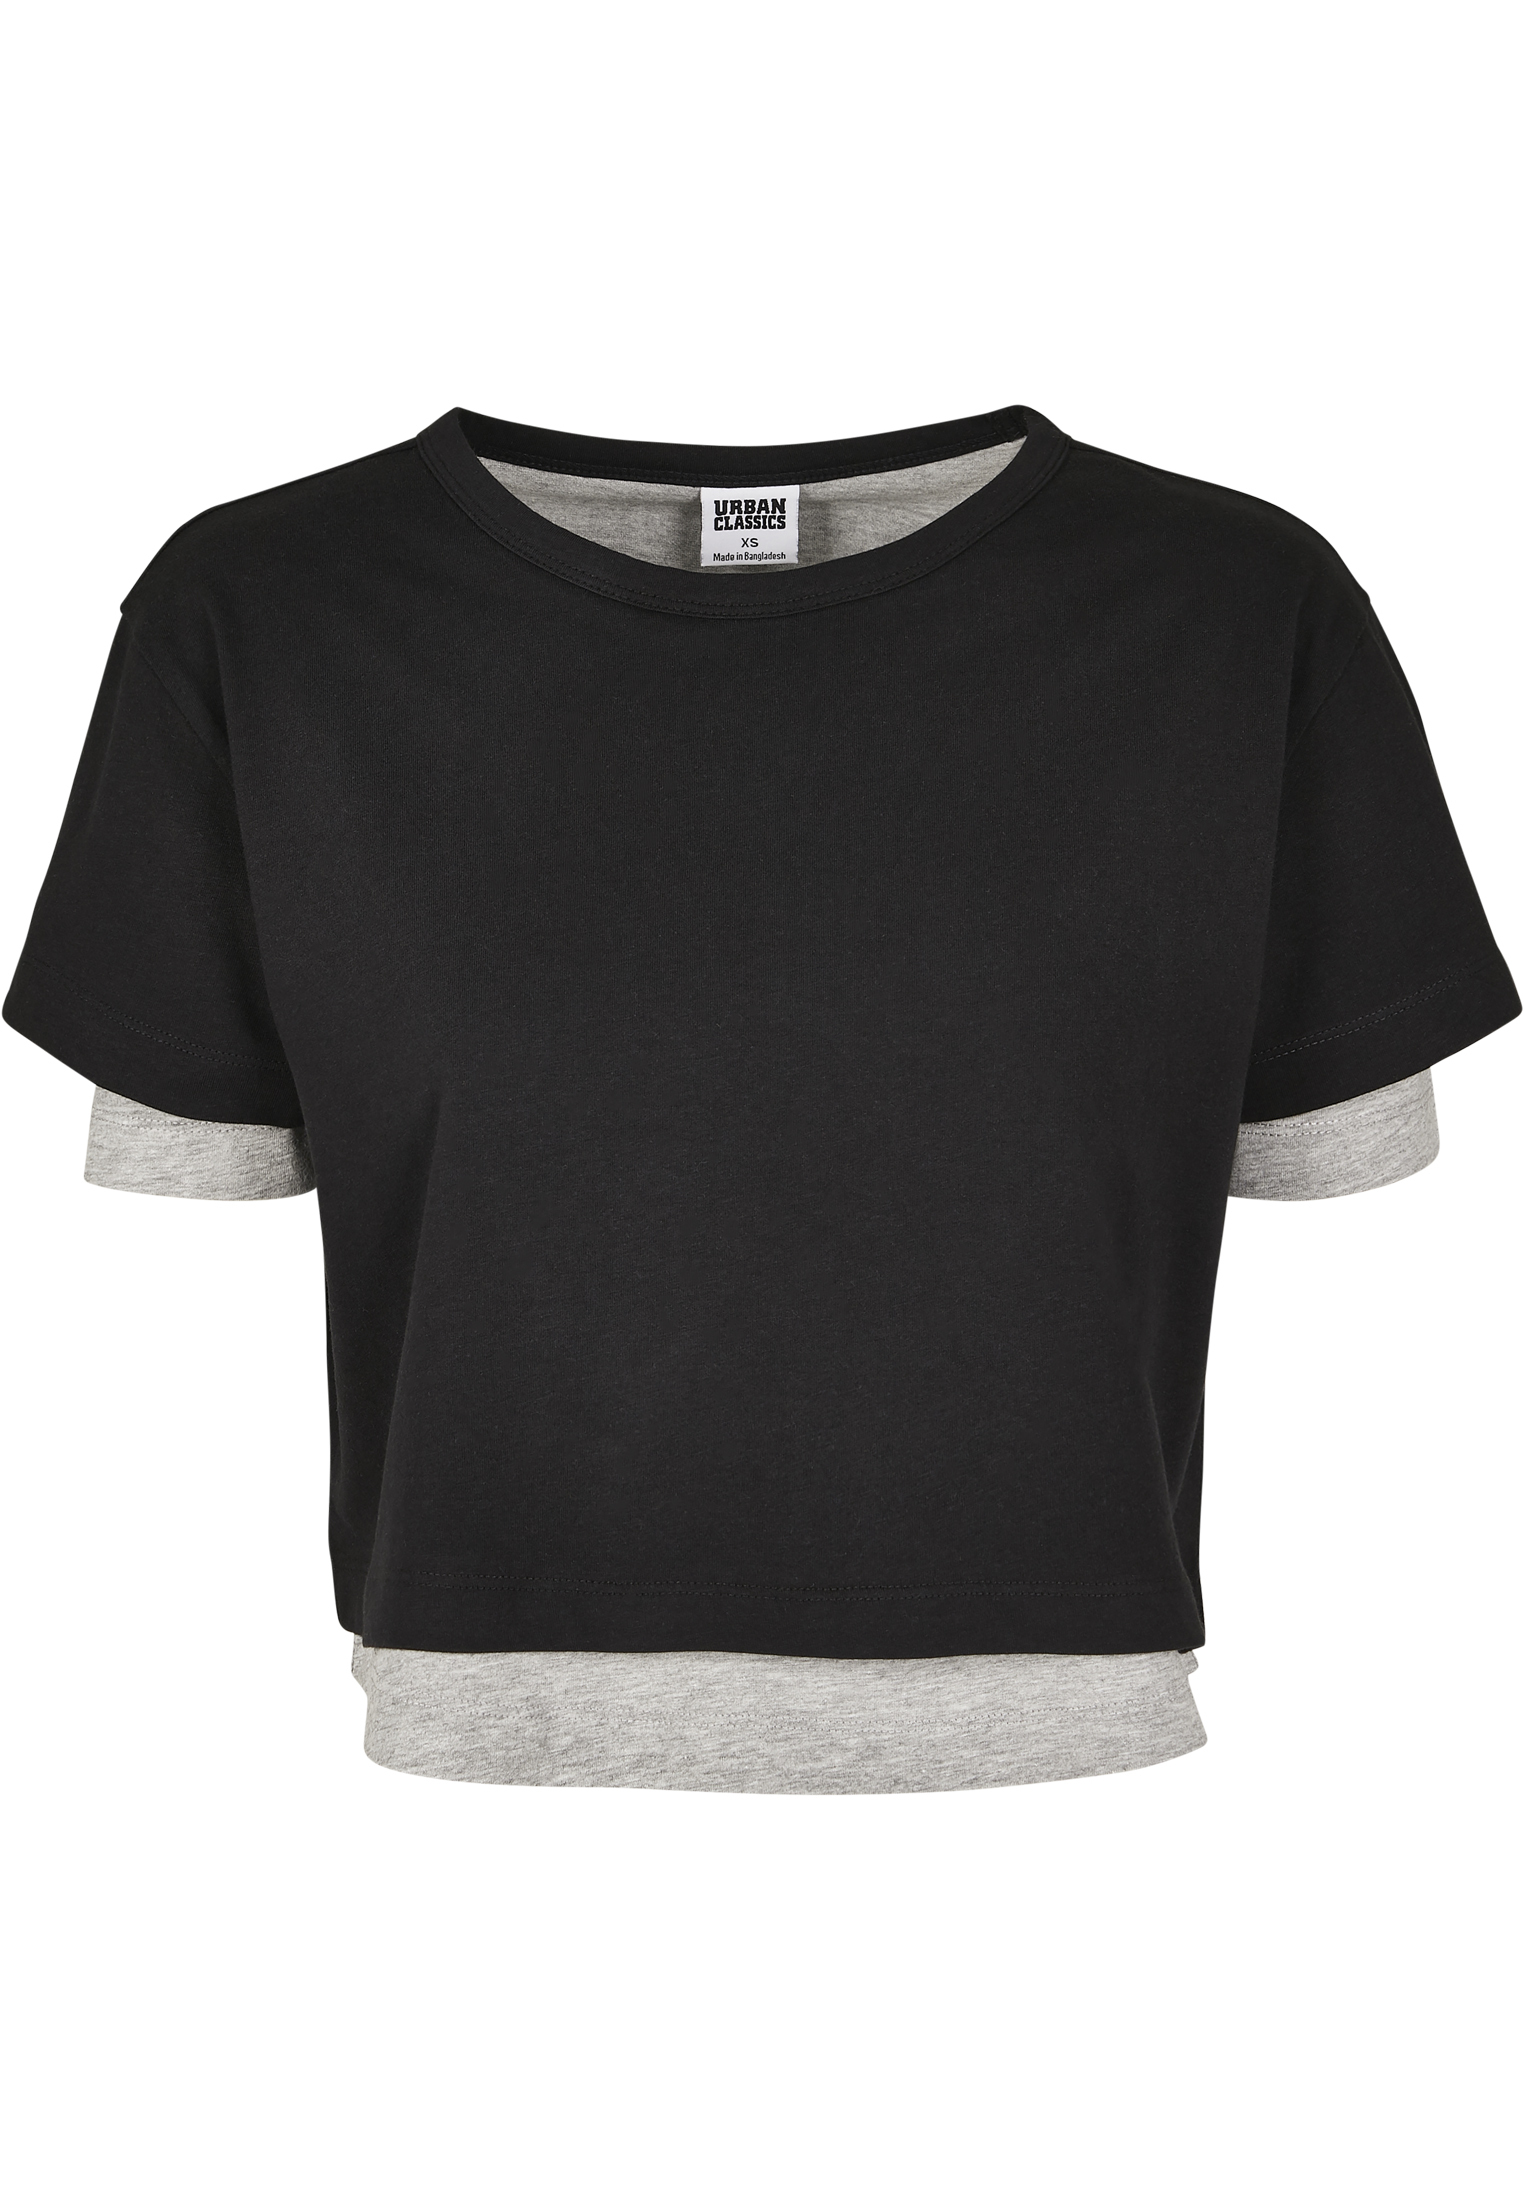 Koszulki & topy 0rxDQ Urban Classics Koszulka w kolorze Czarnym 